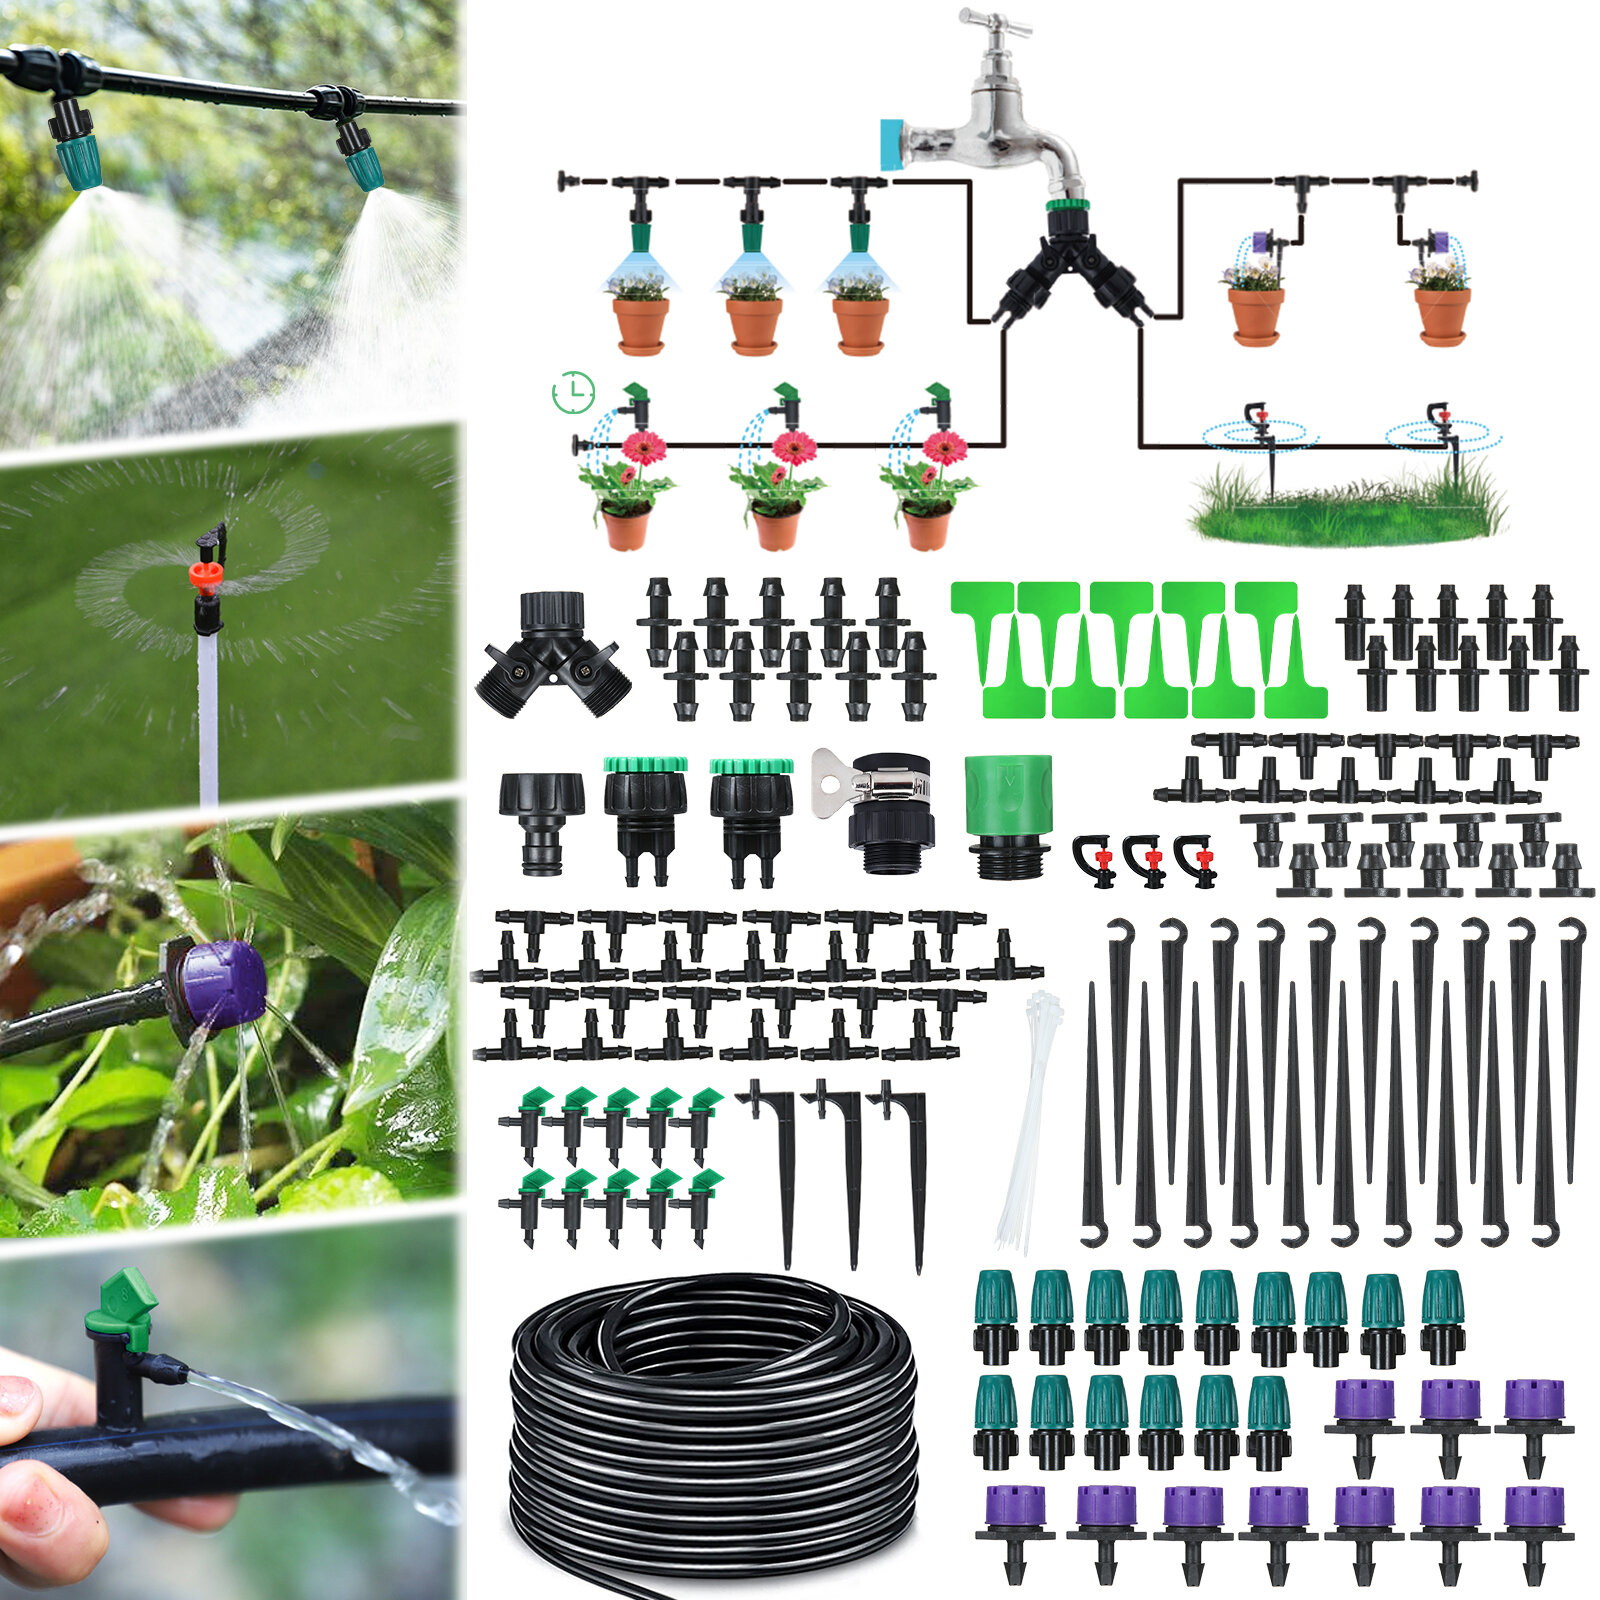 JETEVEN 30M Druppelirrigatie Kit Automatische Sprinkler DIY Tuin Watering Micro Druppelirrigatie Sys